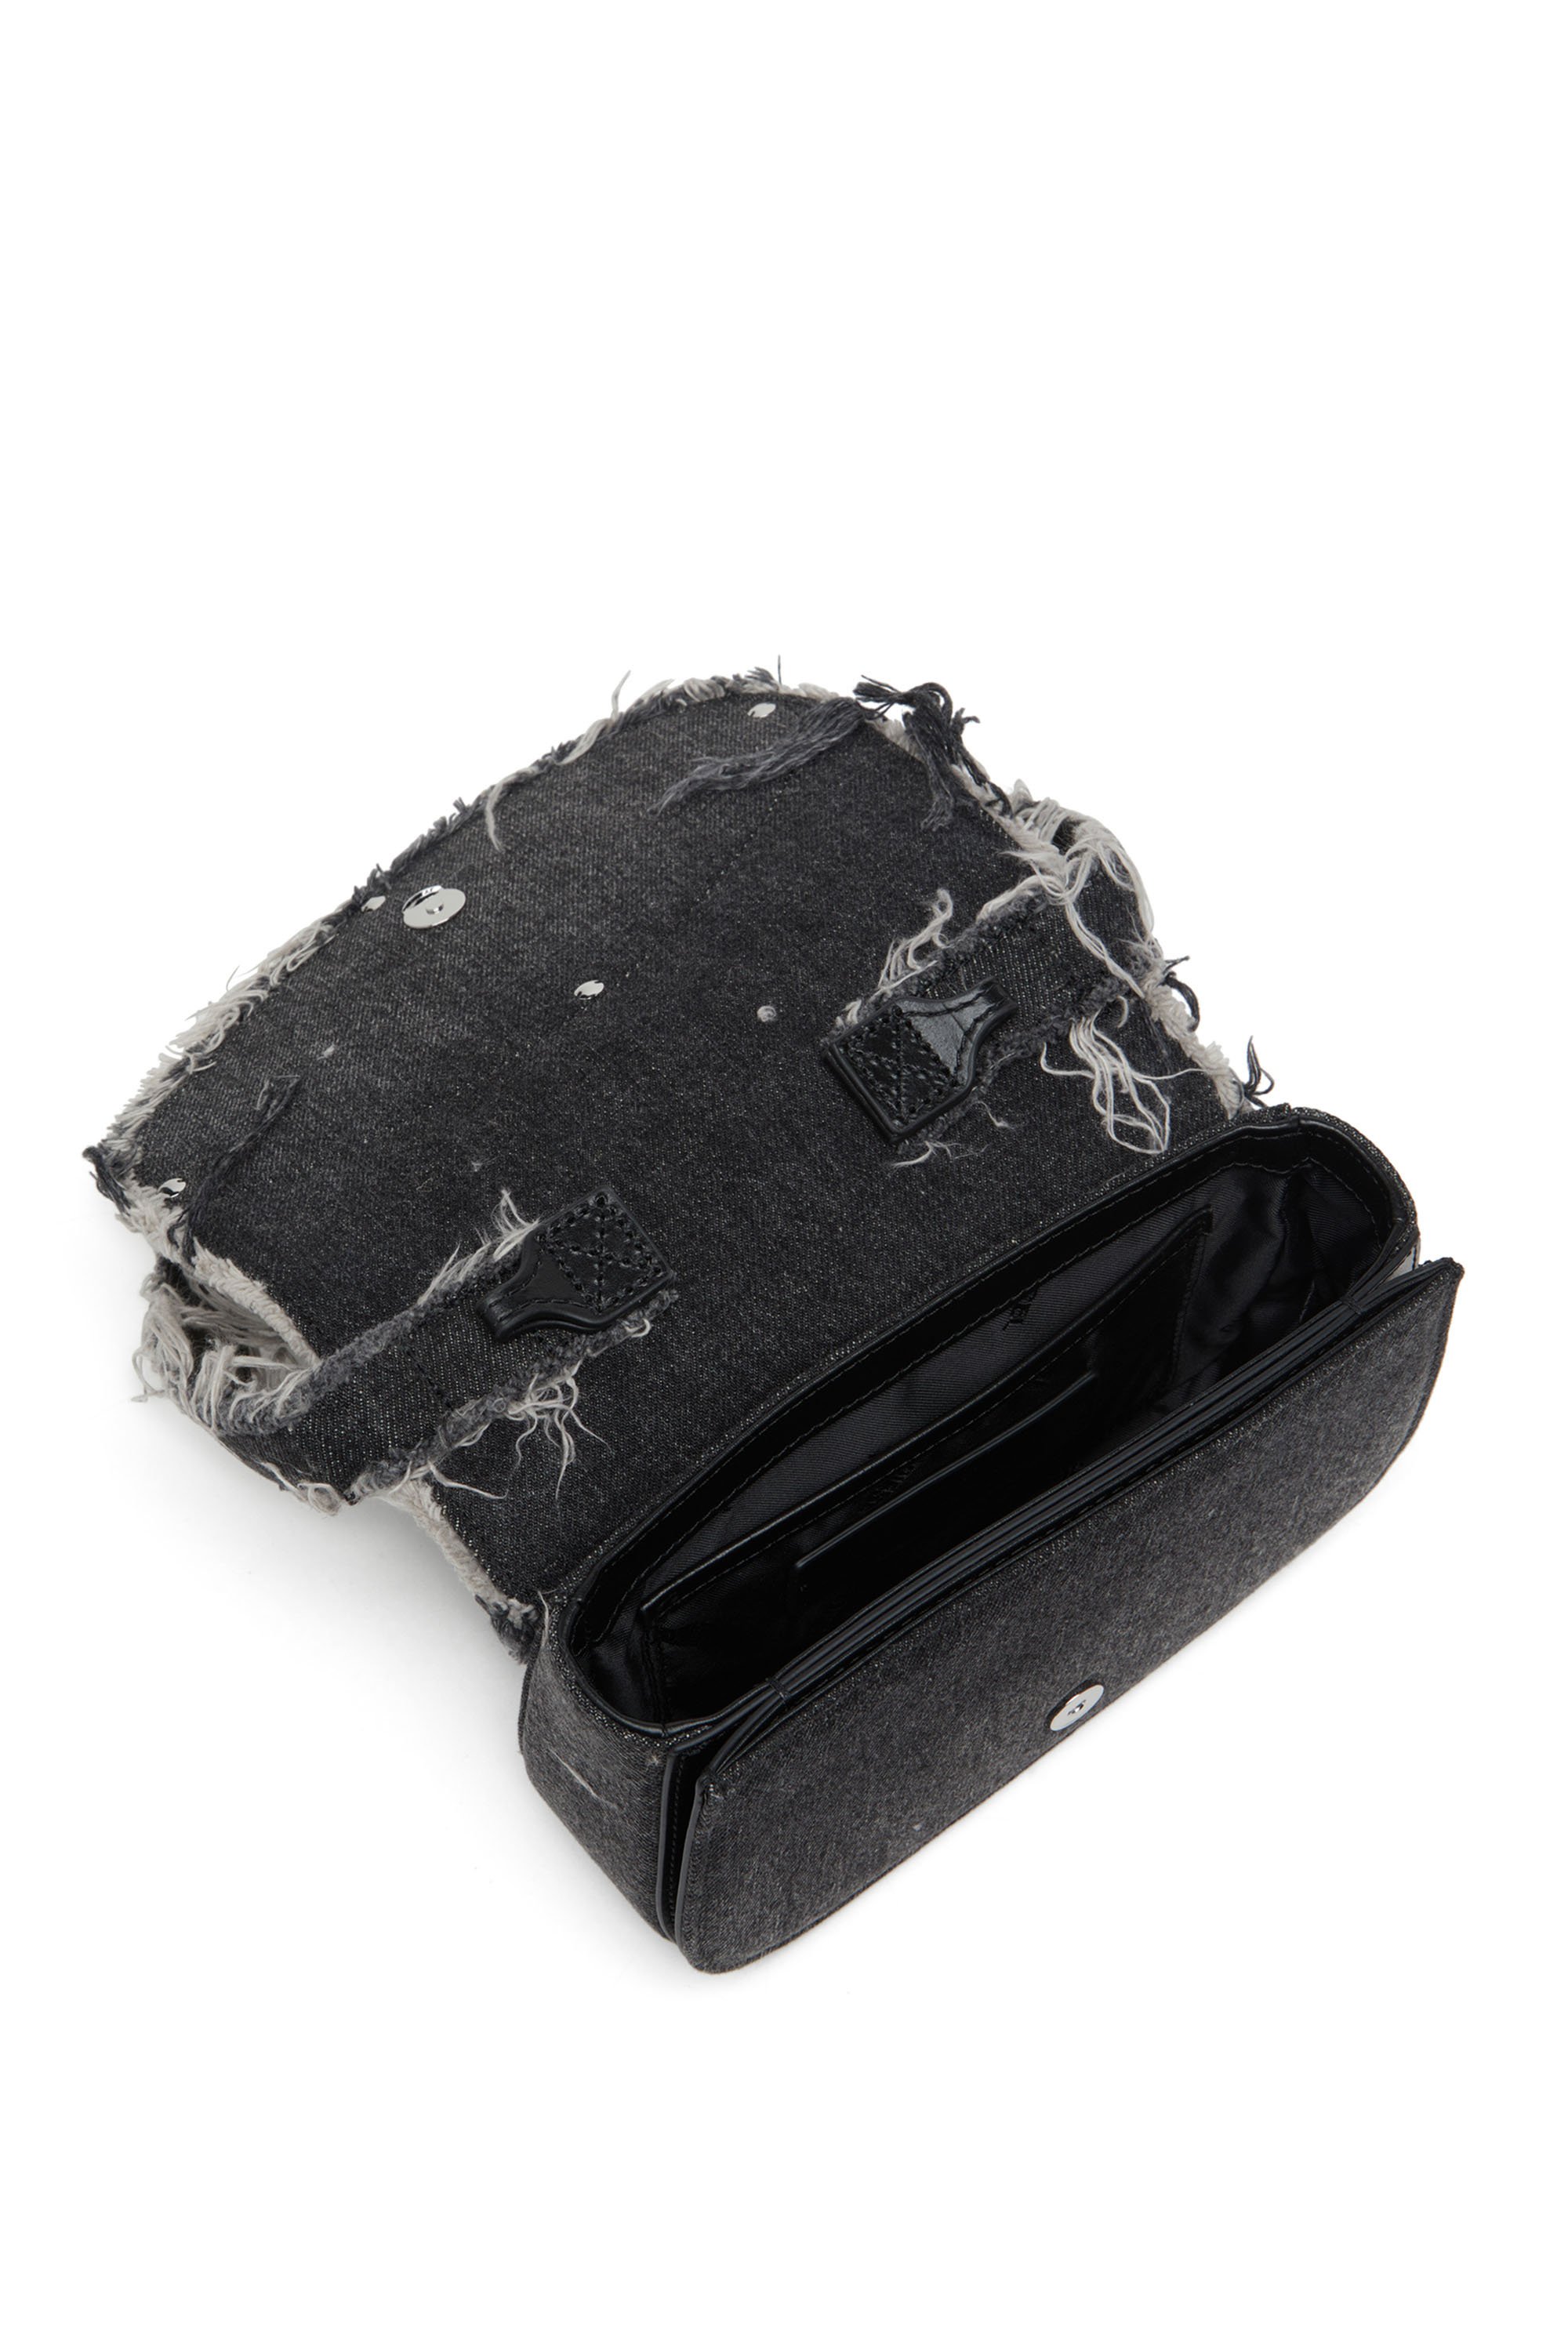 Diesel - 1DR, Female 1DR-Iconic shoulder bag in denim and crystals in Black - Image 4